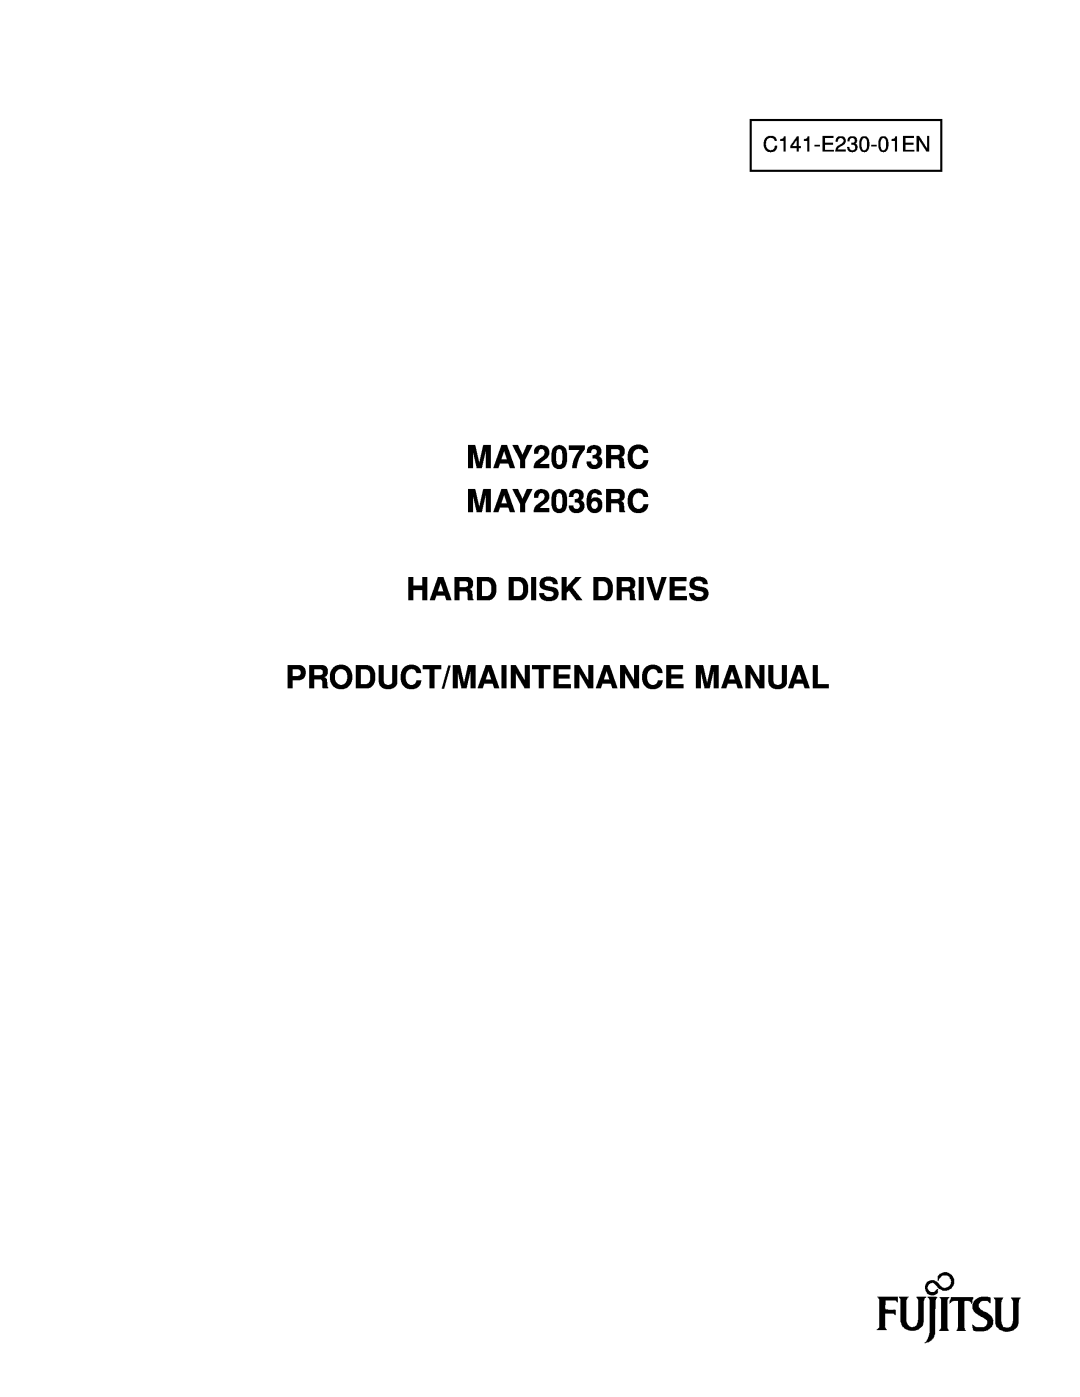 Fujitsu manual MAY2073RC MAY2036RC HARD DISK DRIVES PRODUCT/MAINTENANCE MANUAL, C141-E230-01EN 